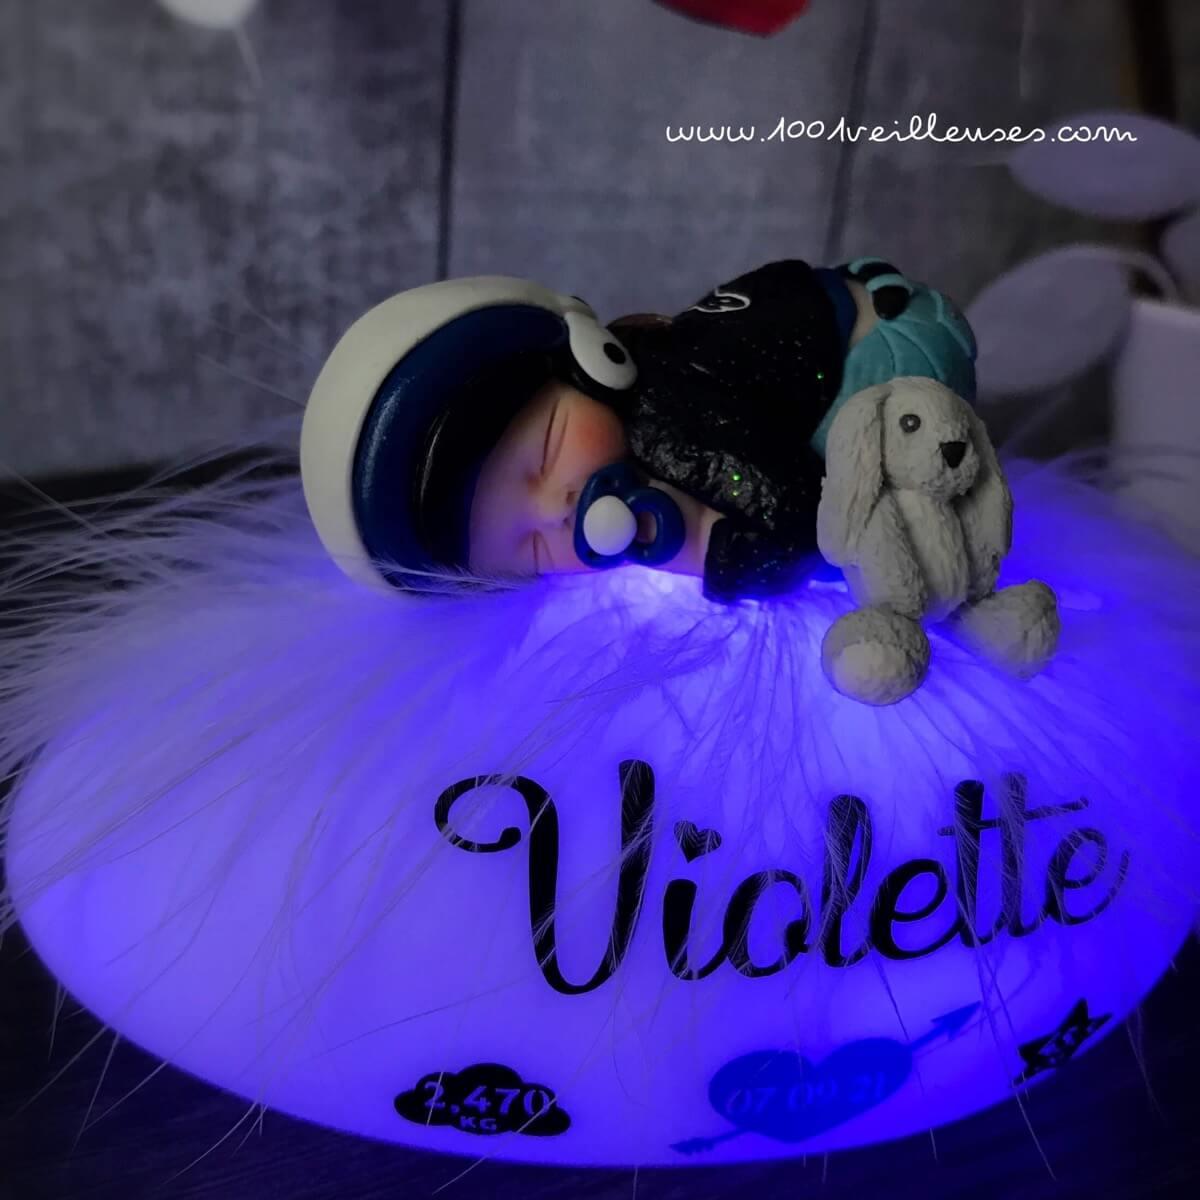 Regalo personalizado de luz nocturna para bebé con temática de motocicleta - Peluche de conejo - Recuerdo para niños